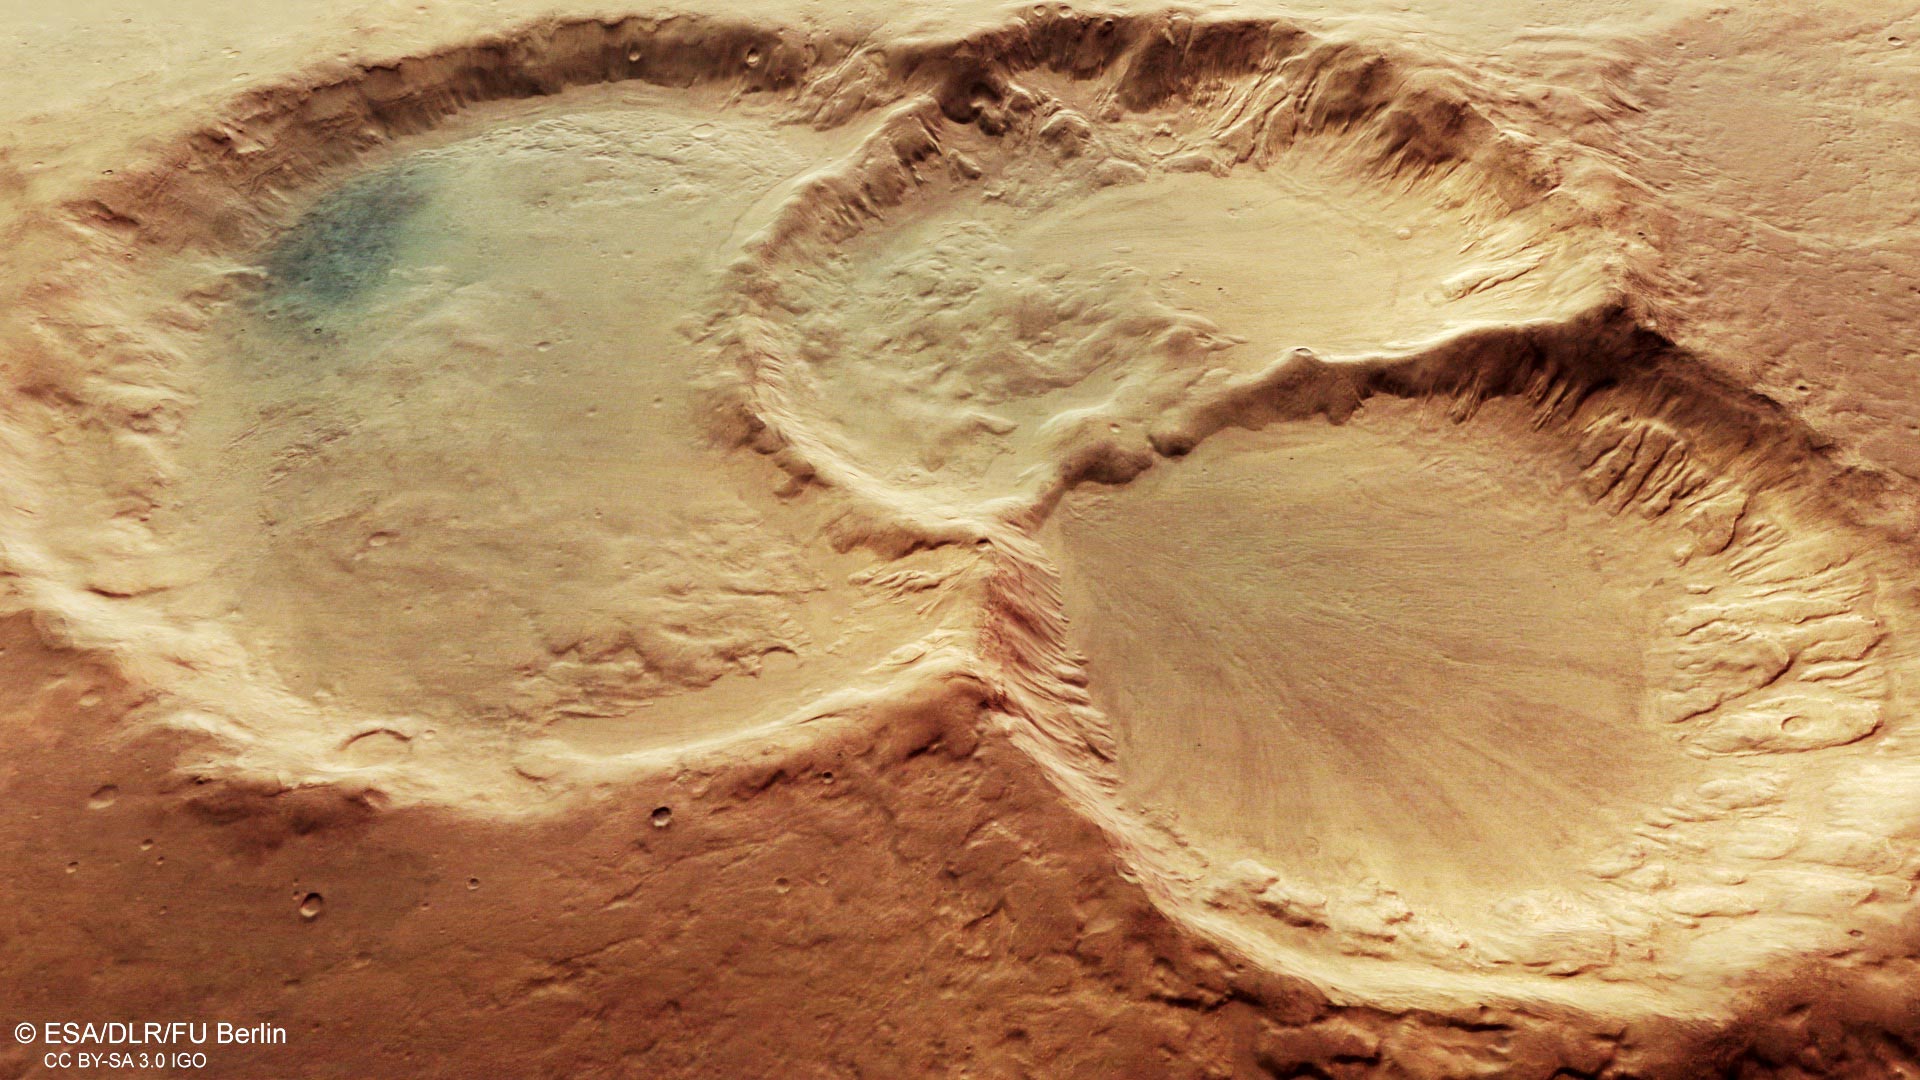 科廷大学新研究证实在过去6亿年里小行星碰撞形成火星撞击坑的频率一致